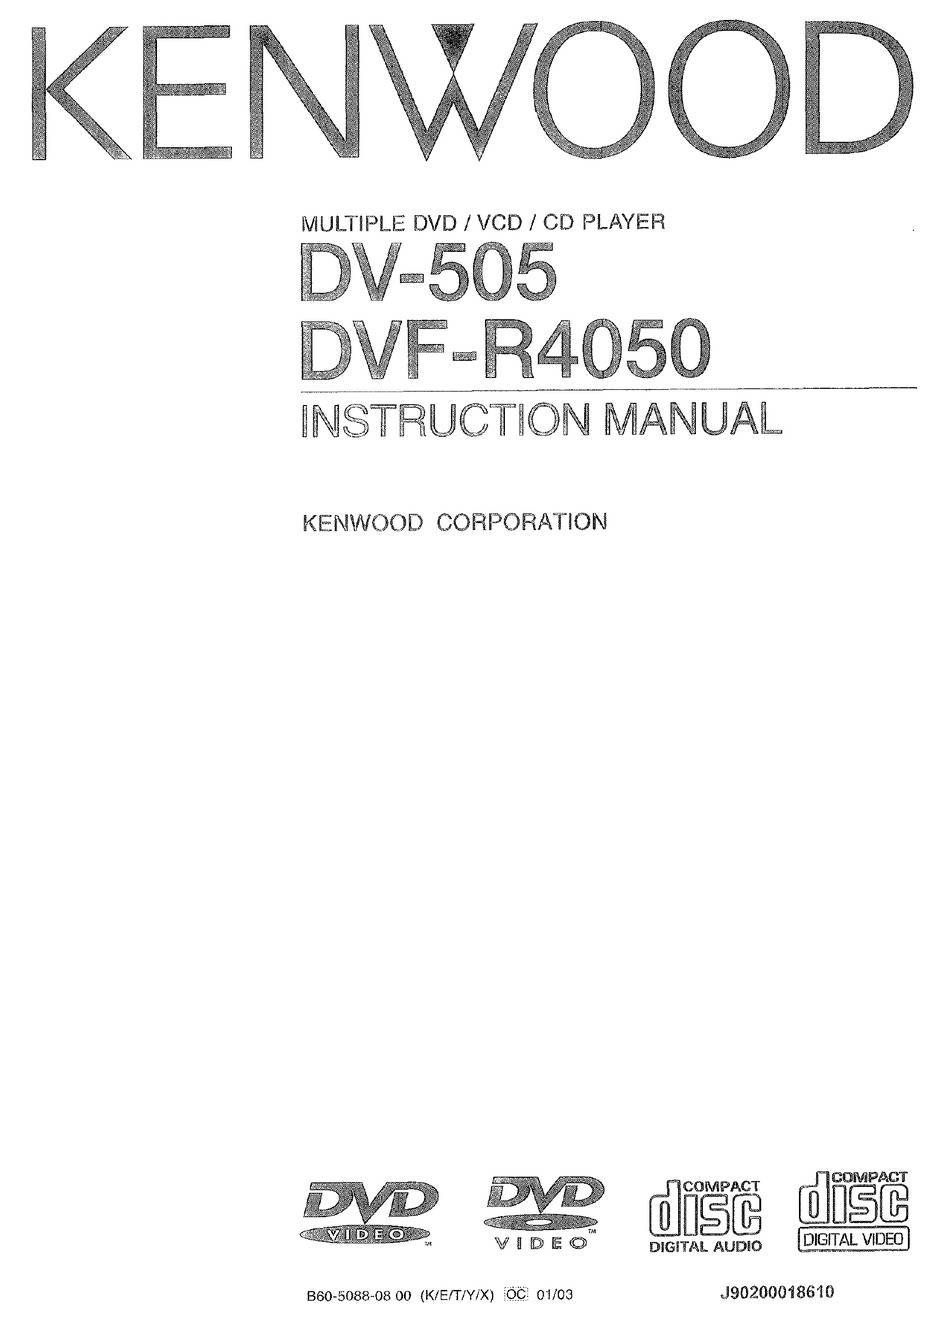 Kenwood DV-505